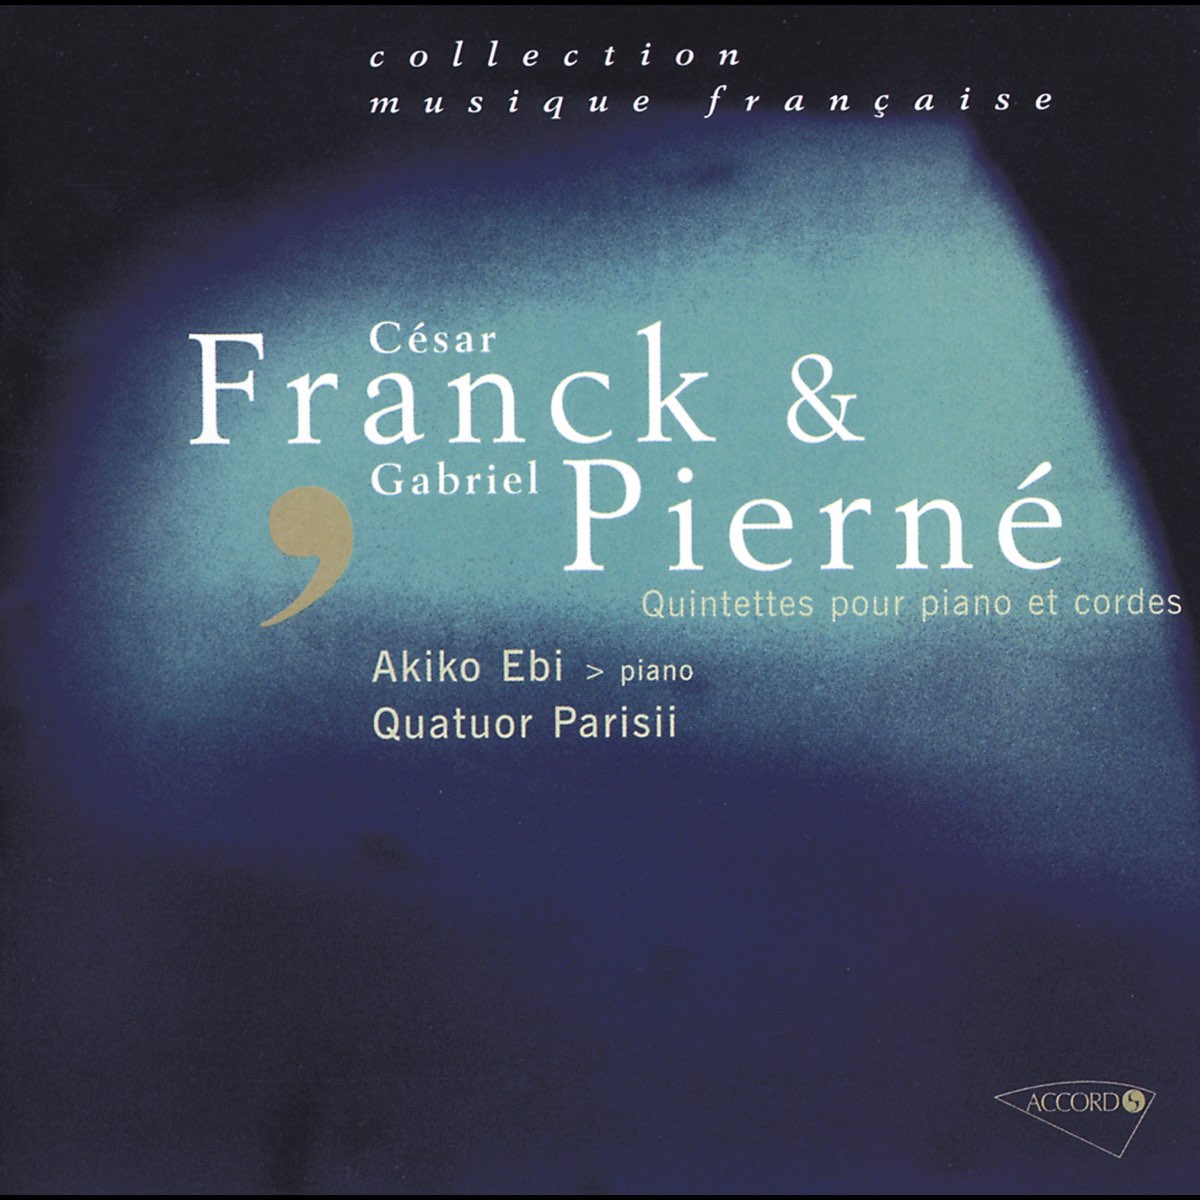 Franck & Pierné: Quintettes pour piano et cordes de Quatuor Parisii & Akiko  Ebi en Apple Music